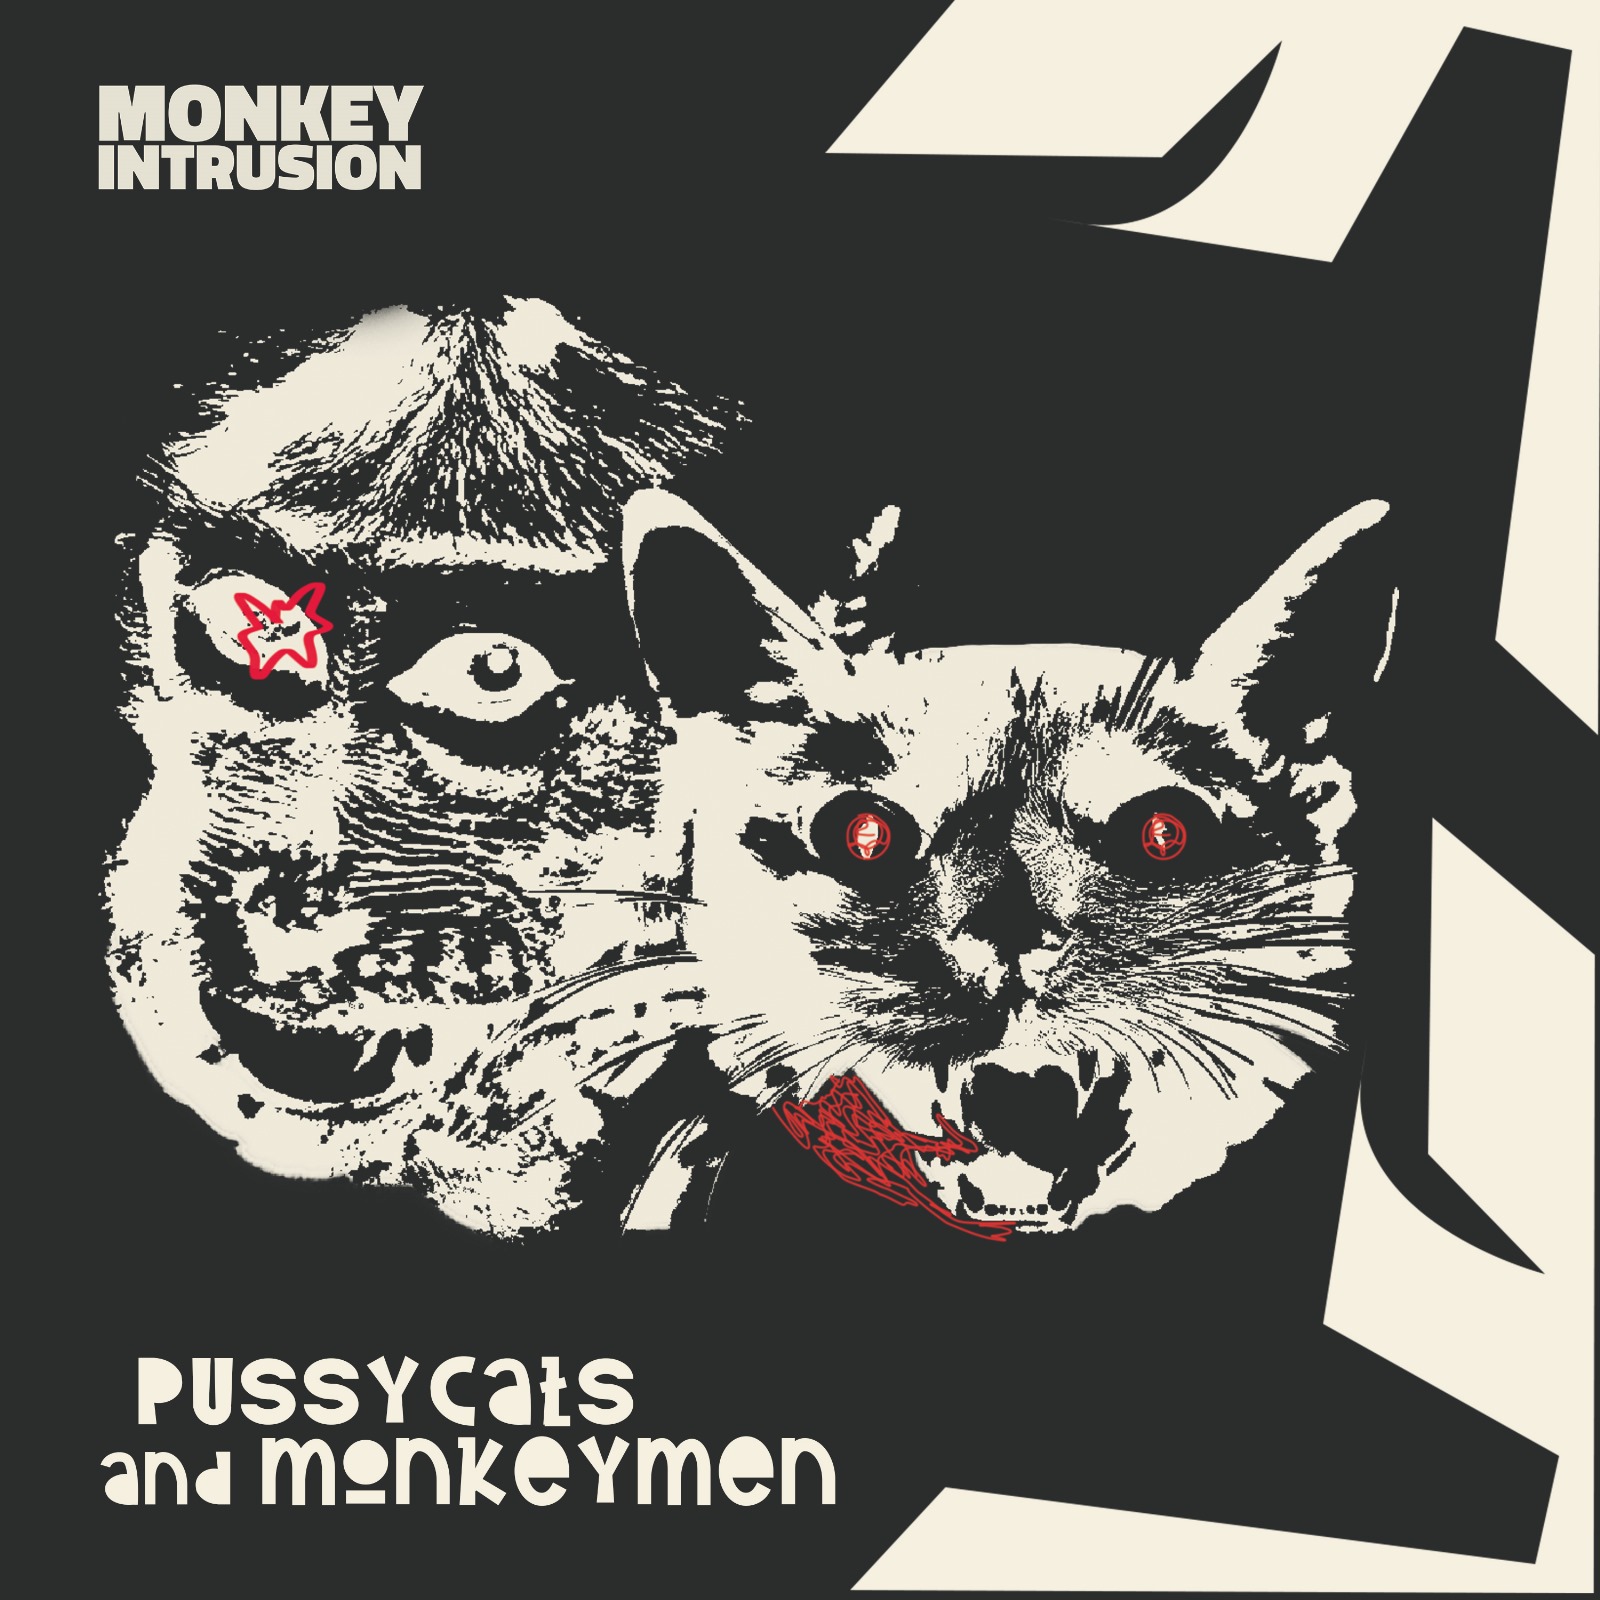 I Monkey Intrusion pubblicano l'album di debutto 